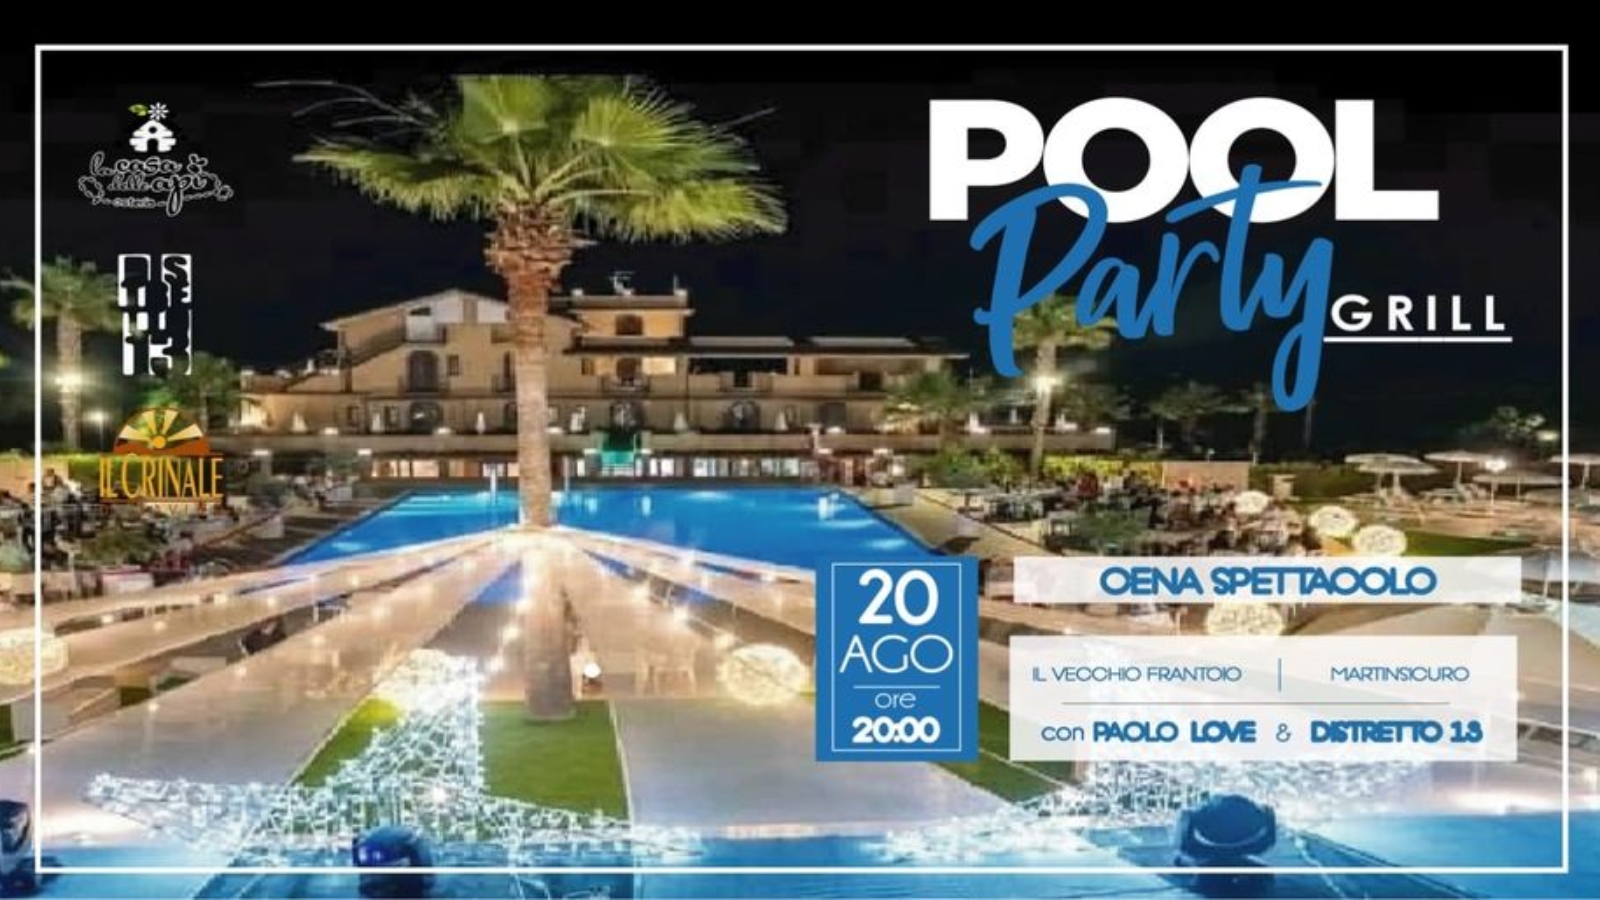 Pool Party Grill - Cena Spettacolo 20 Agosto 2020